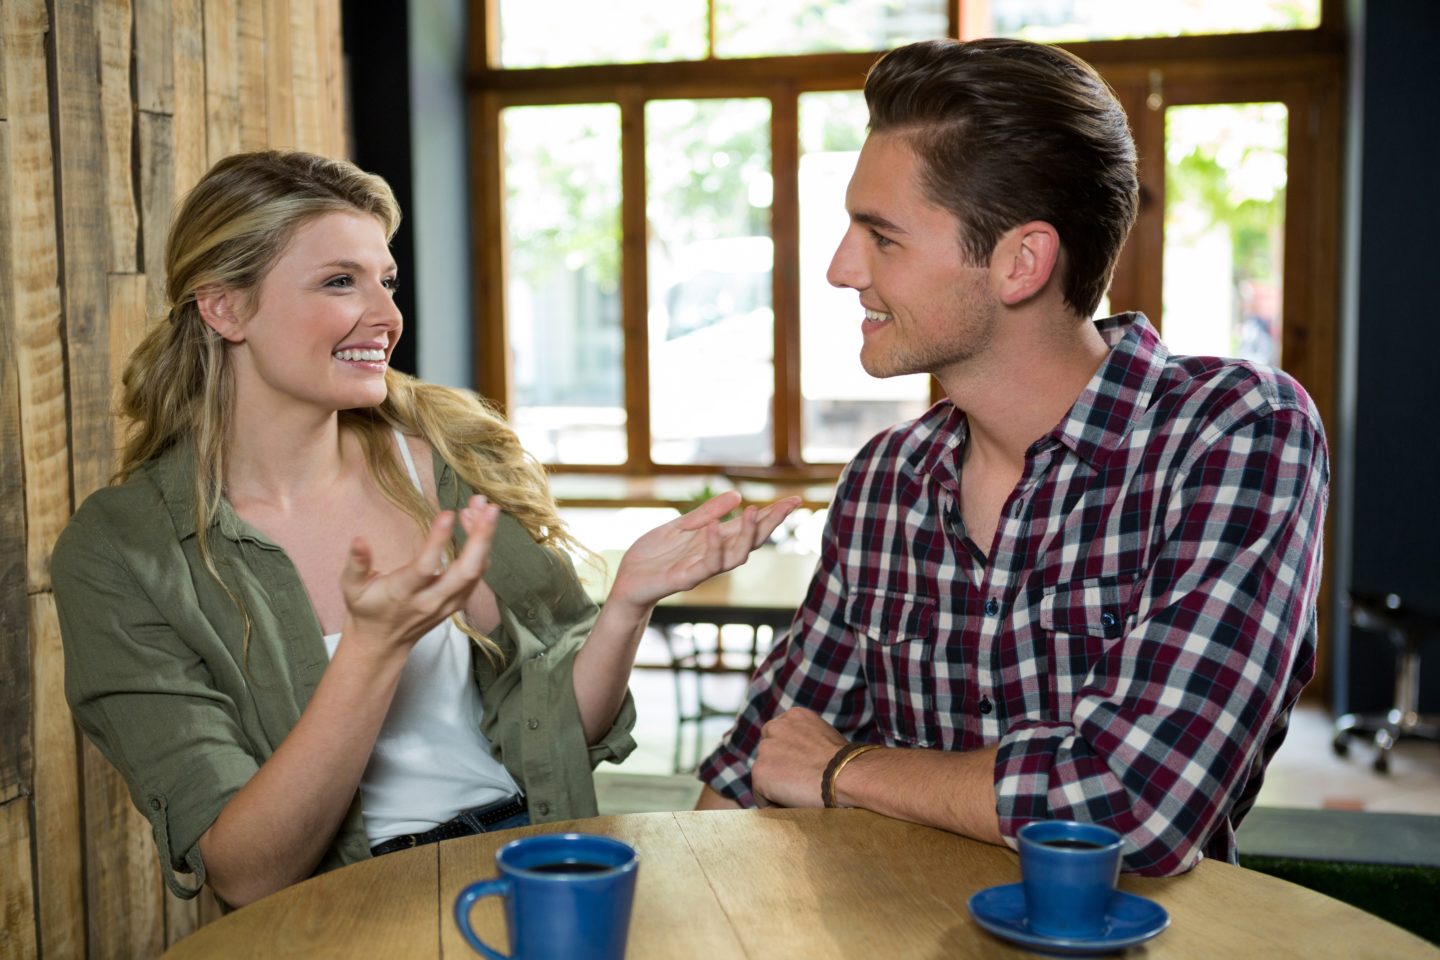 Une femme et un homme prennent un café ensemble, ils sourient et elle lève ses mains d'un air incrédule